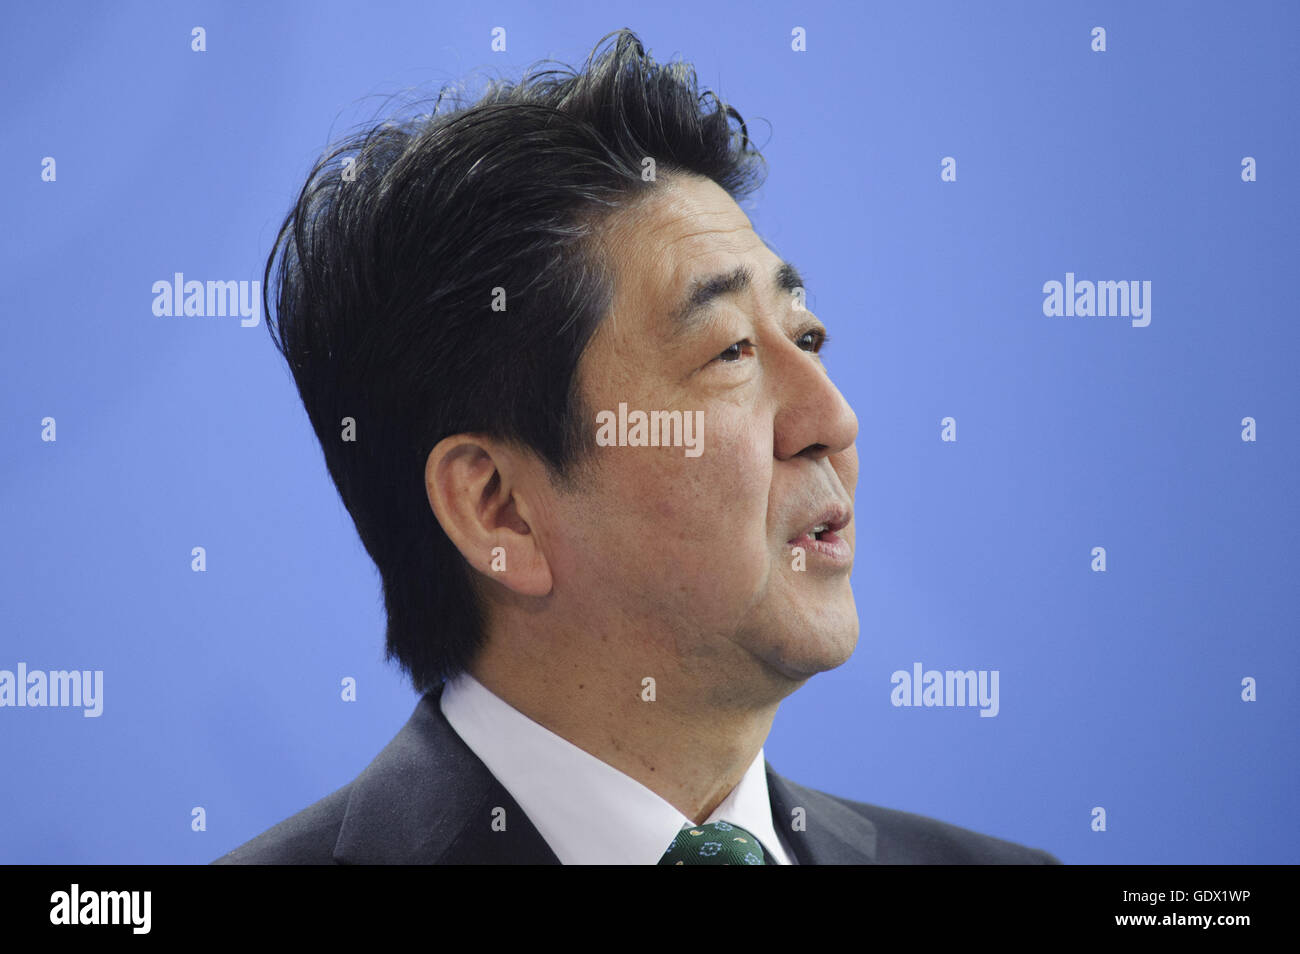 Portrait de Shinzo Abe lors d'une conférence de presse à Berlin, Allemagne, 2014 Banque D'Images